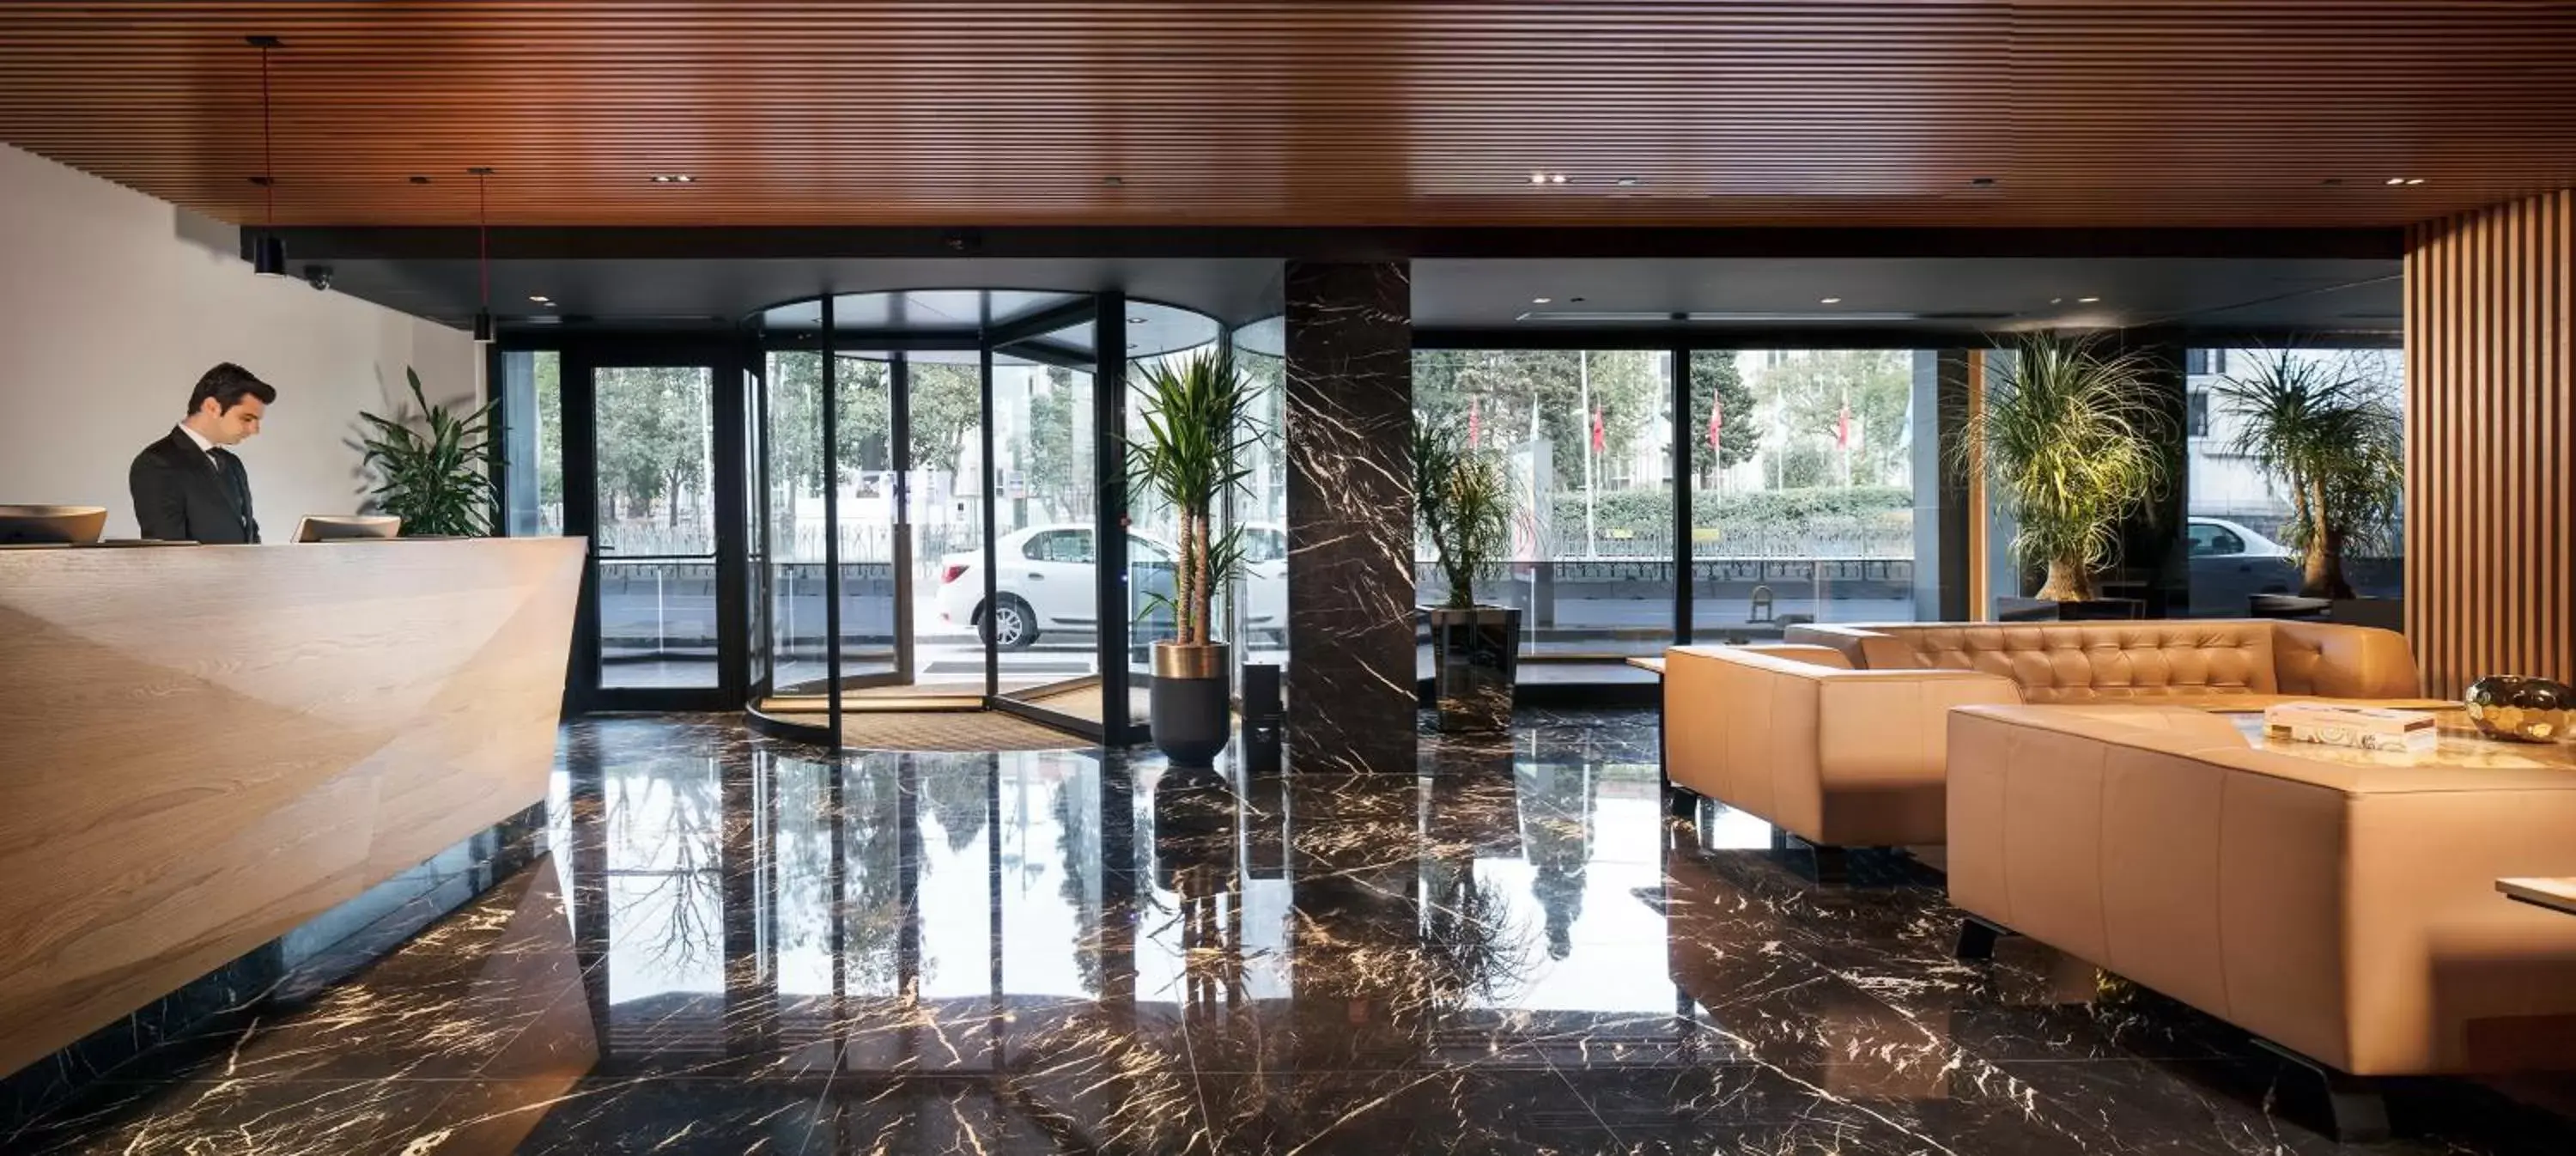 Lobby or reception in Metropolitan Hotels Bosphorus